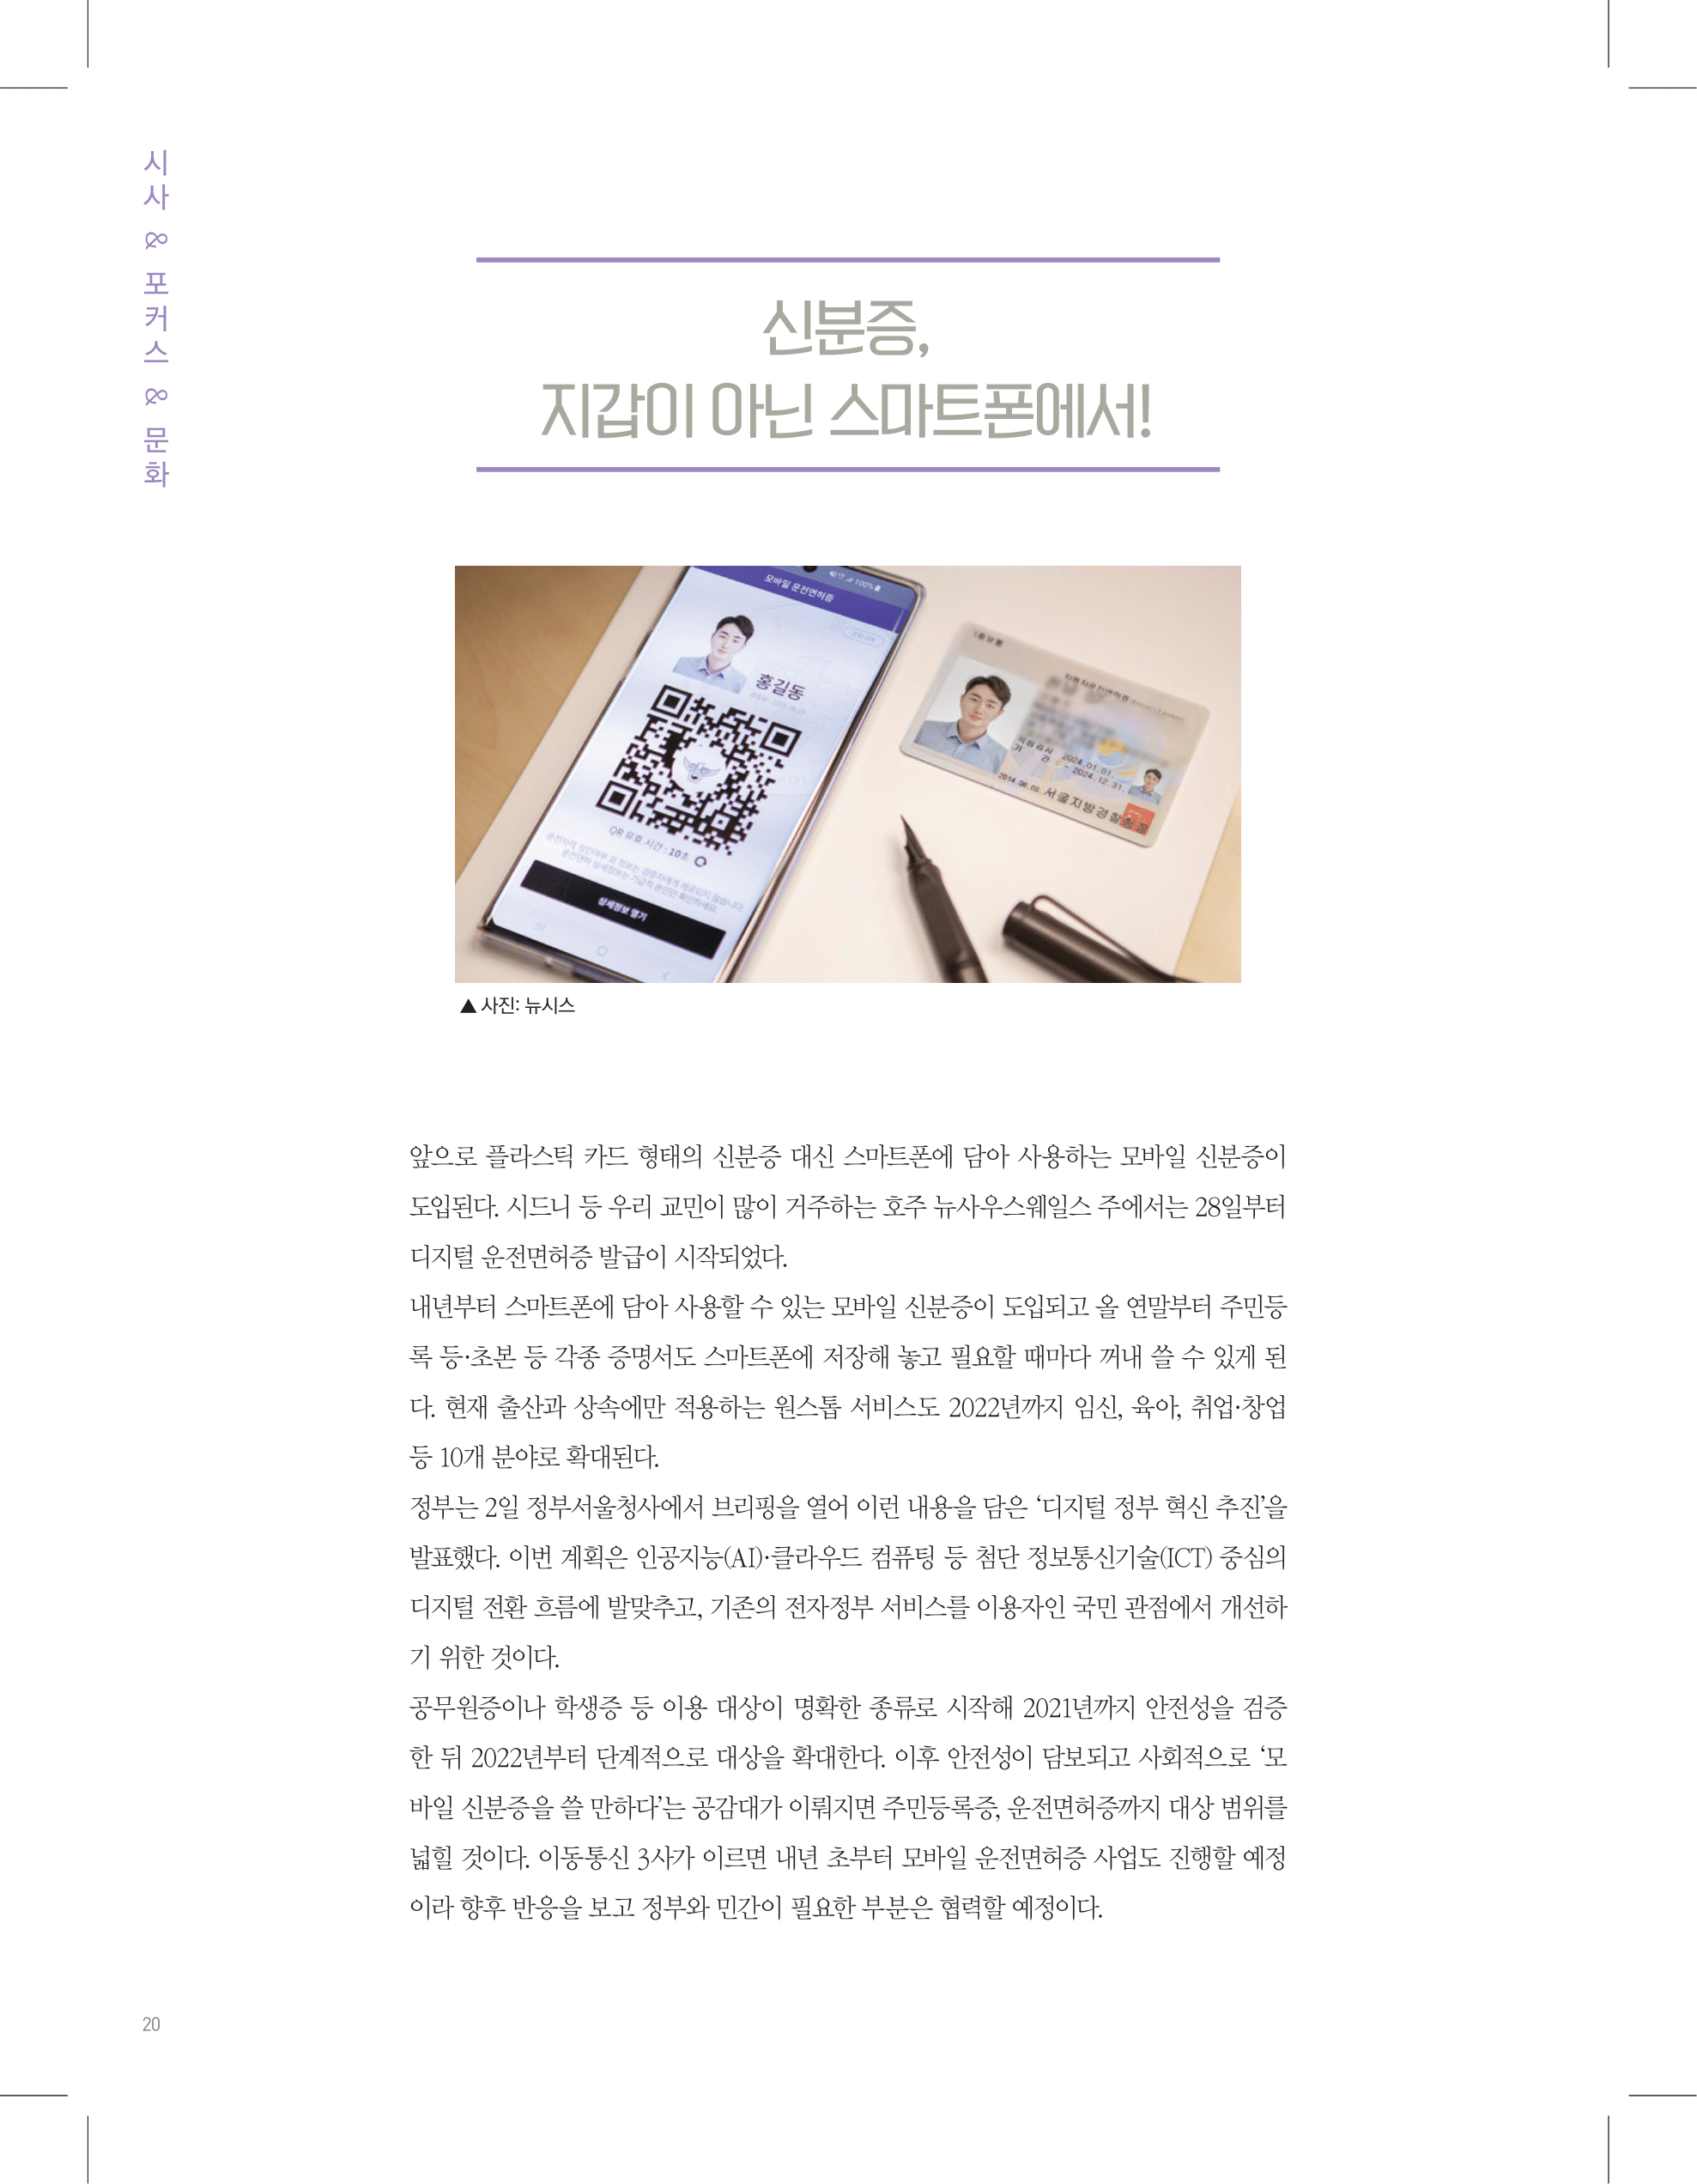 뜻새김 신문 74호 20